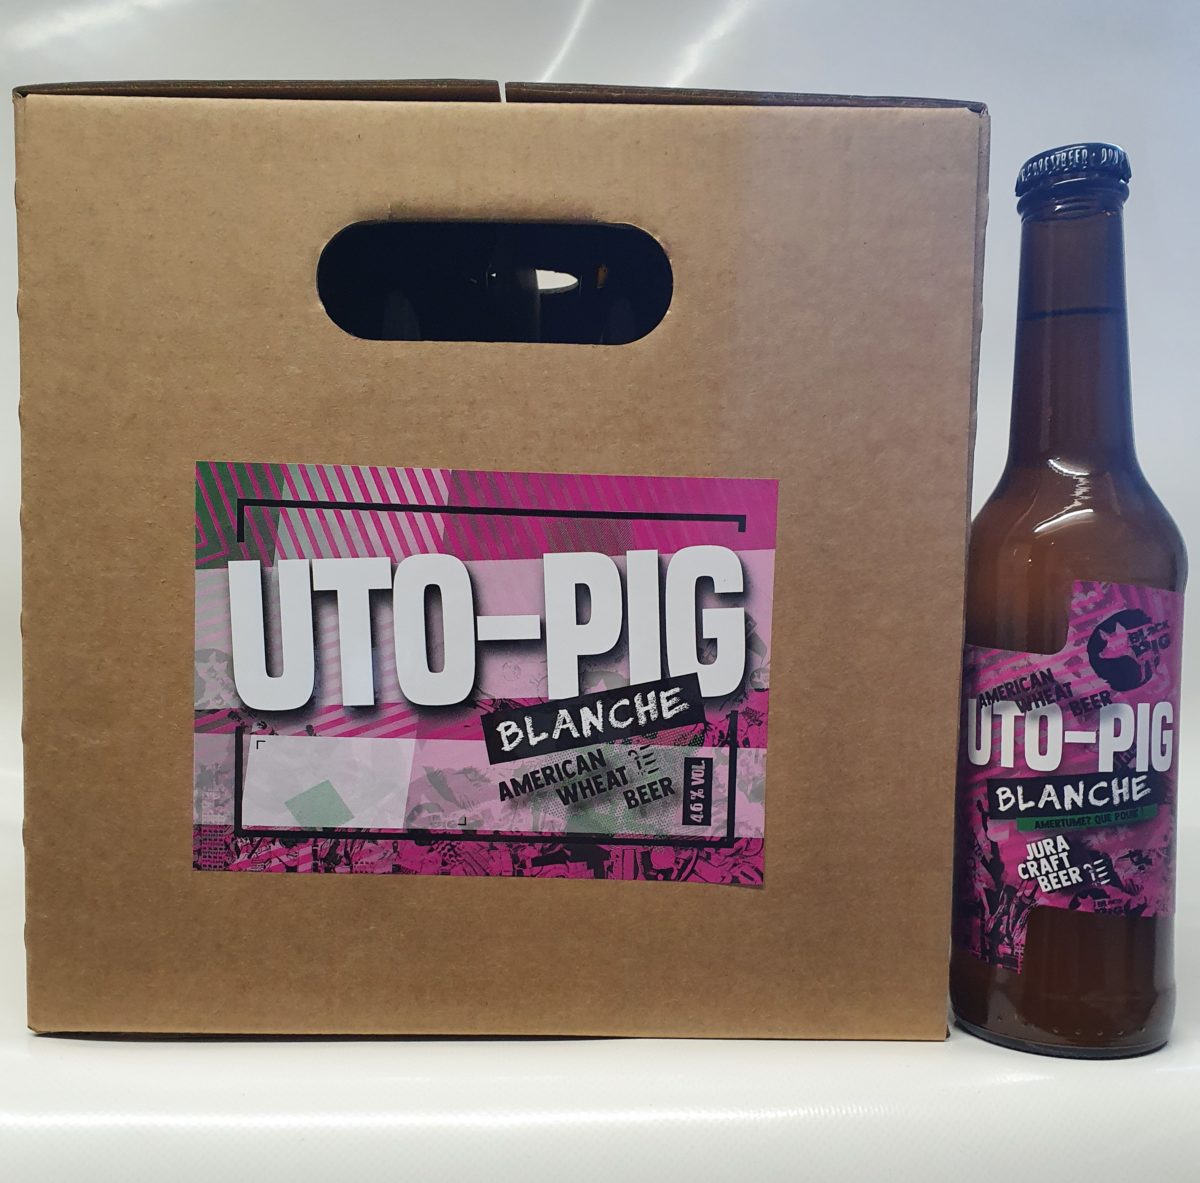 Black-Pig | Courroux JU | UTO-PIG | La Blanche | 33cl